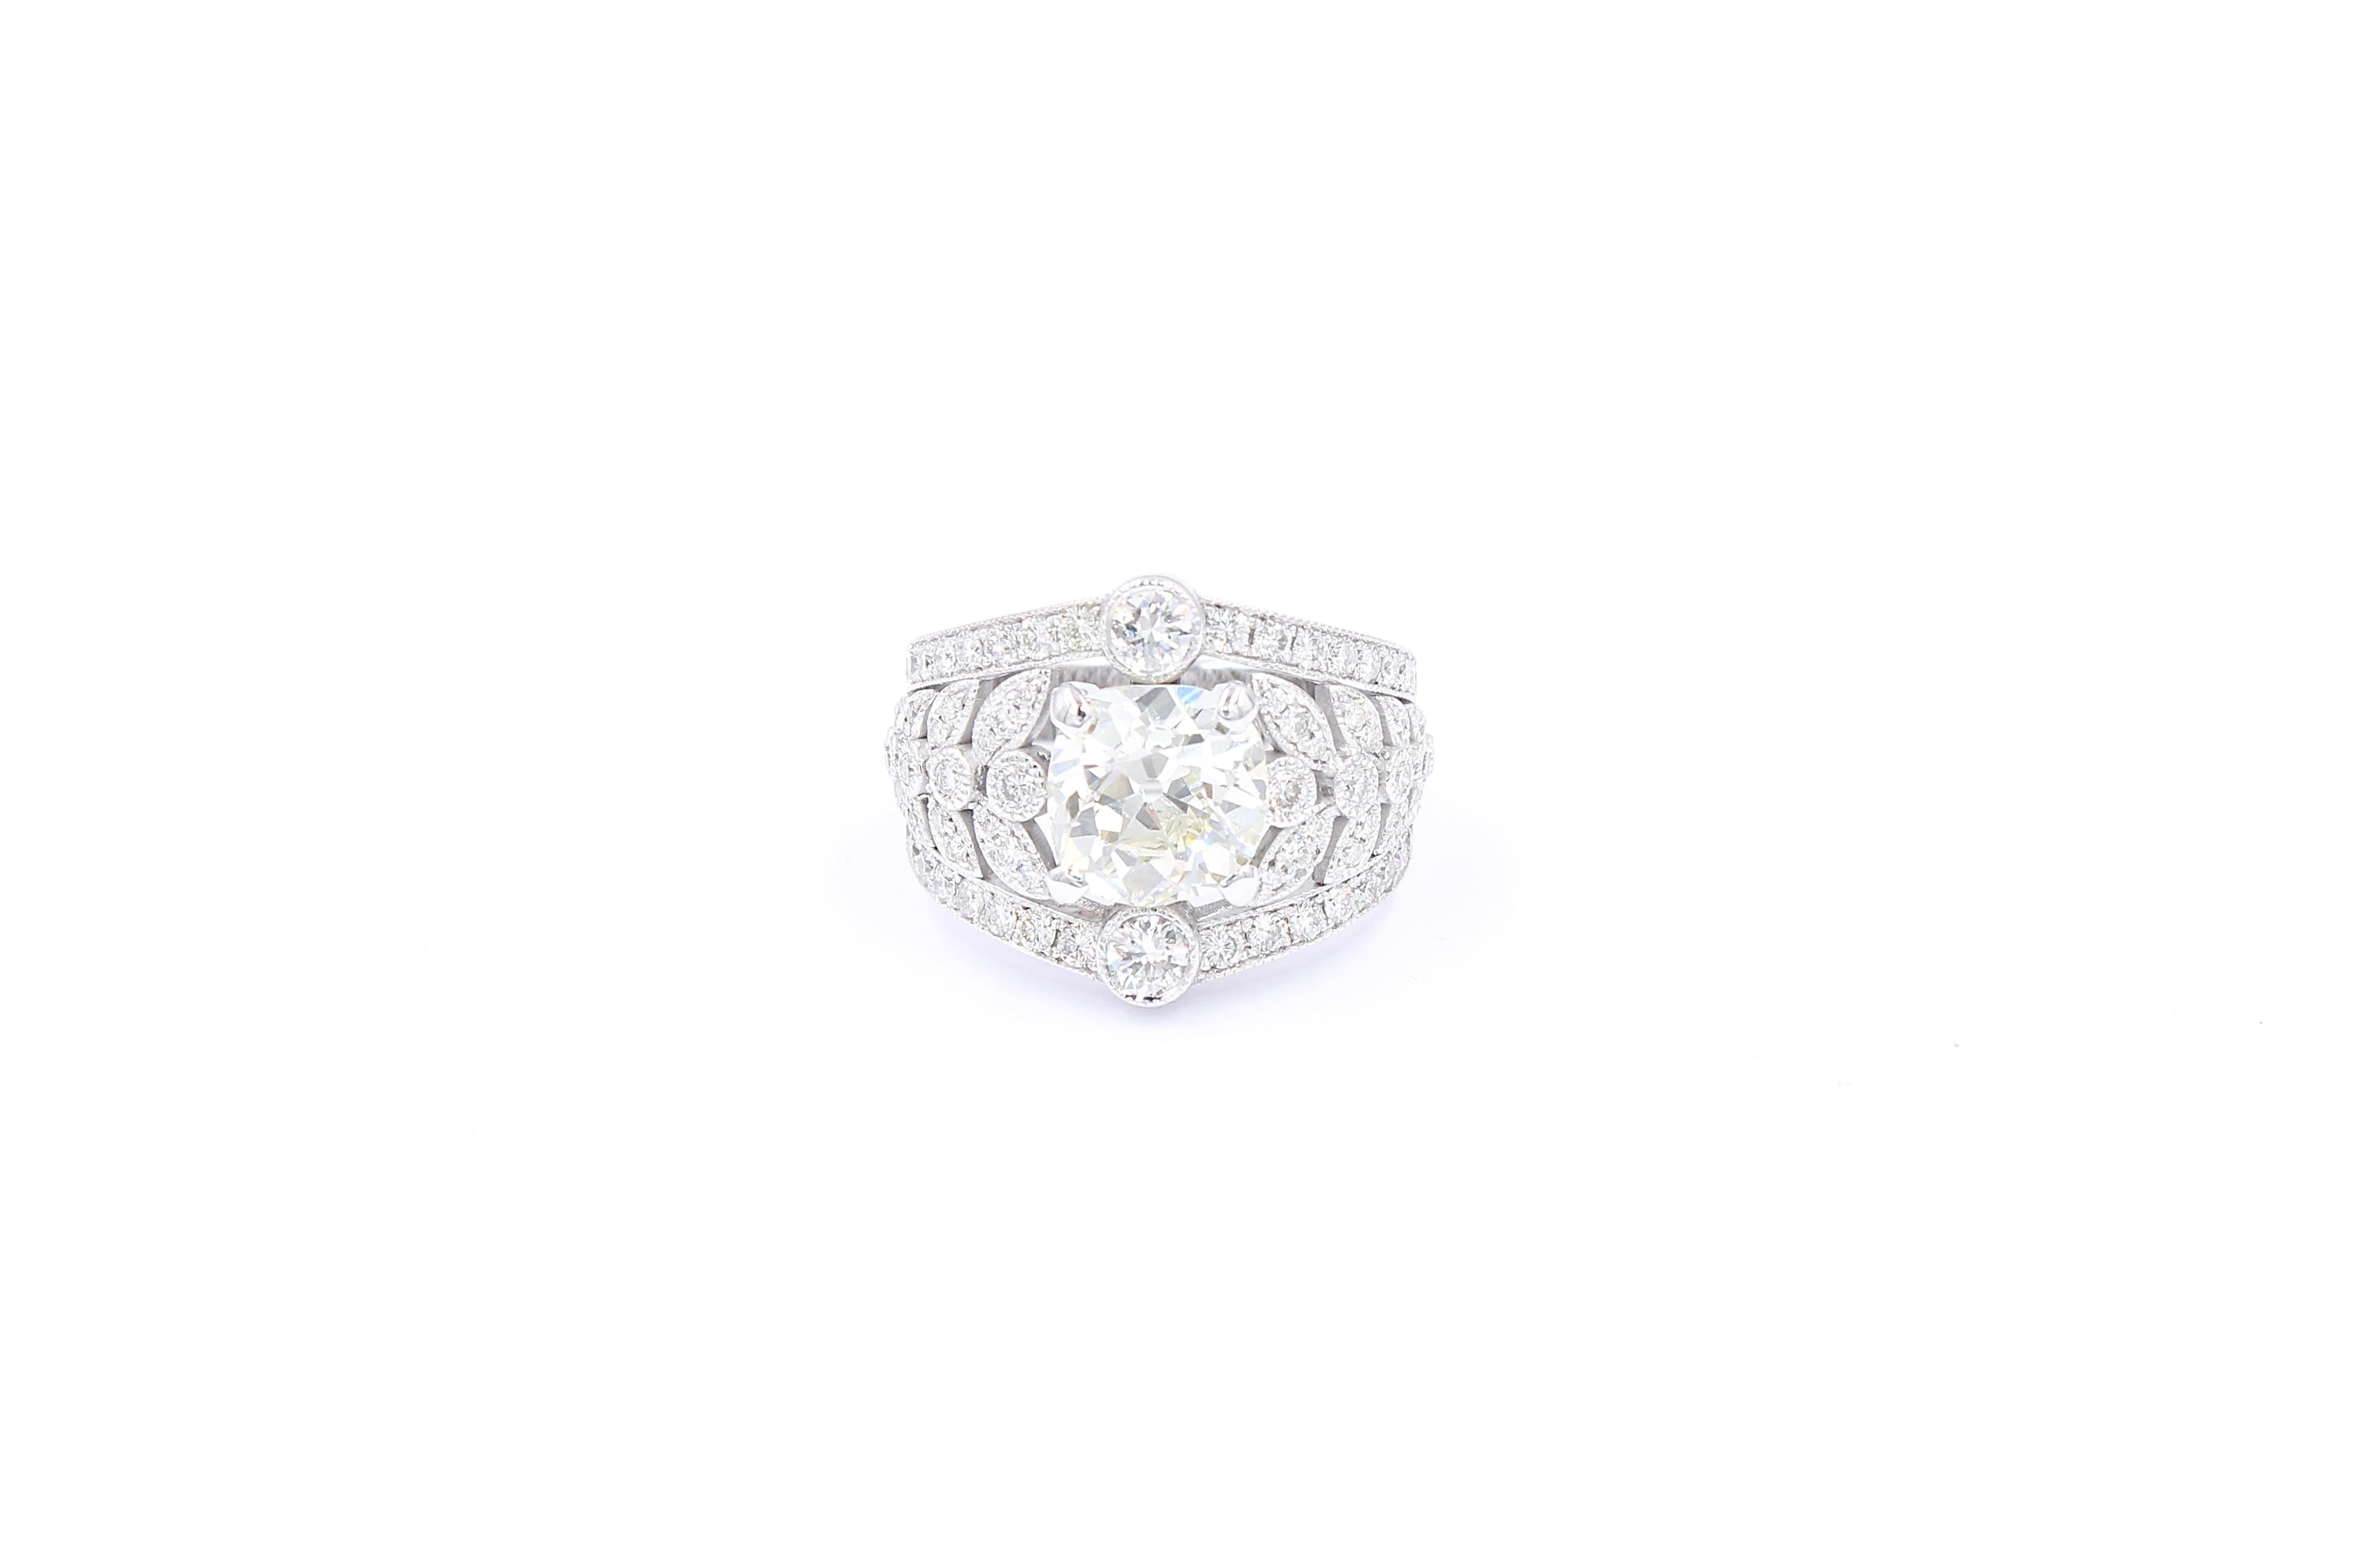 Ring aus 18 Karat Weißgold mit einem natürlichen Diamanten aus einer alten Mine von 2,74 Karat in der Mitte (geschätzte Farbe J/K - Klarheit Vs)  umgeben von 88 Diamanten für insgesamt  1,20 Karat Brillanten (Farbe G /H - Reinheit Vs). 

Der Ring